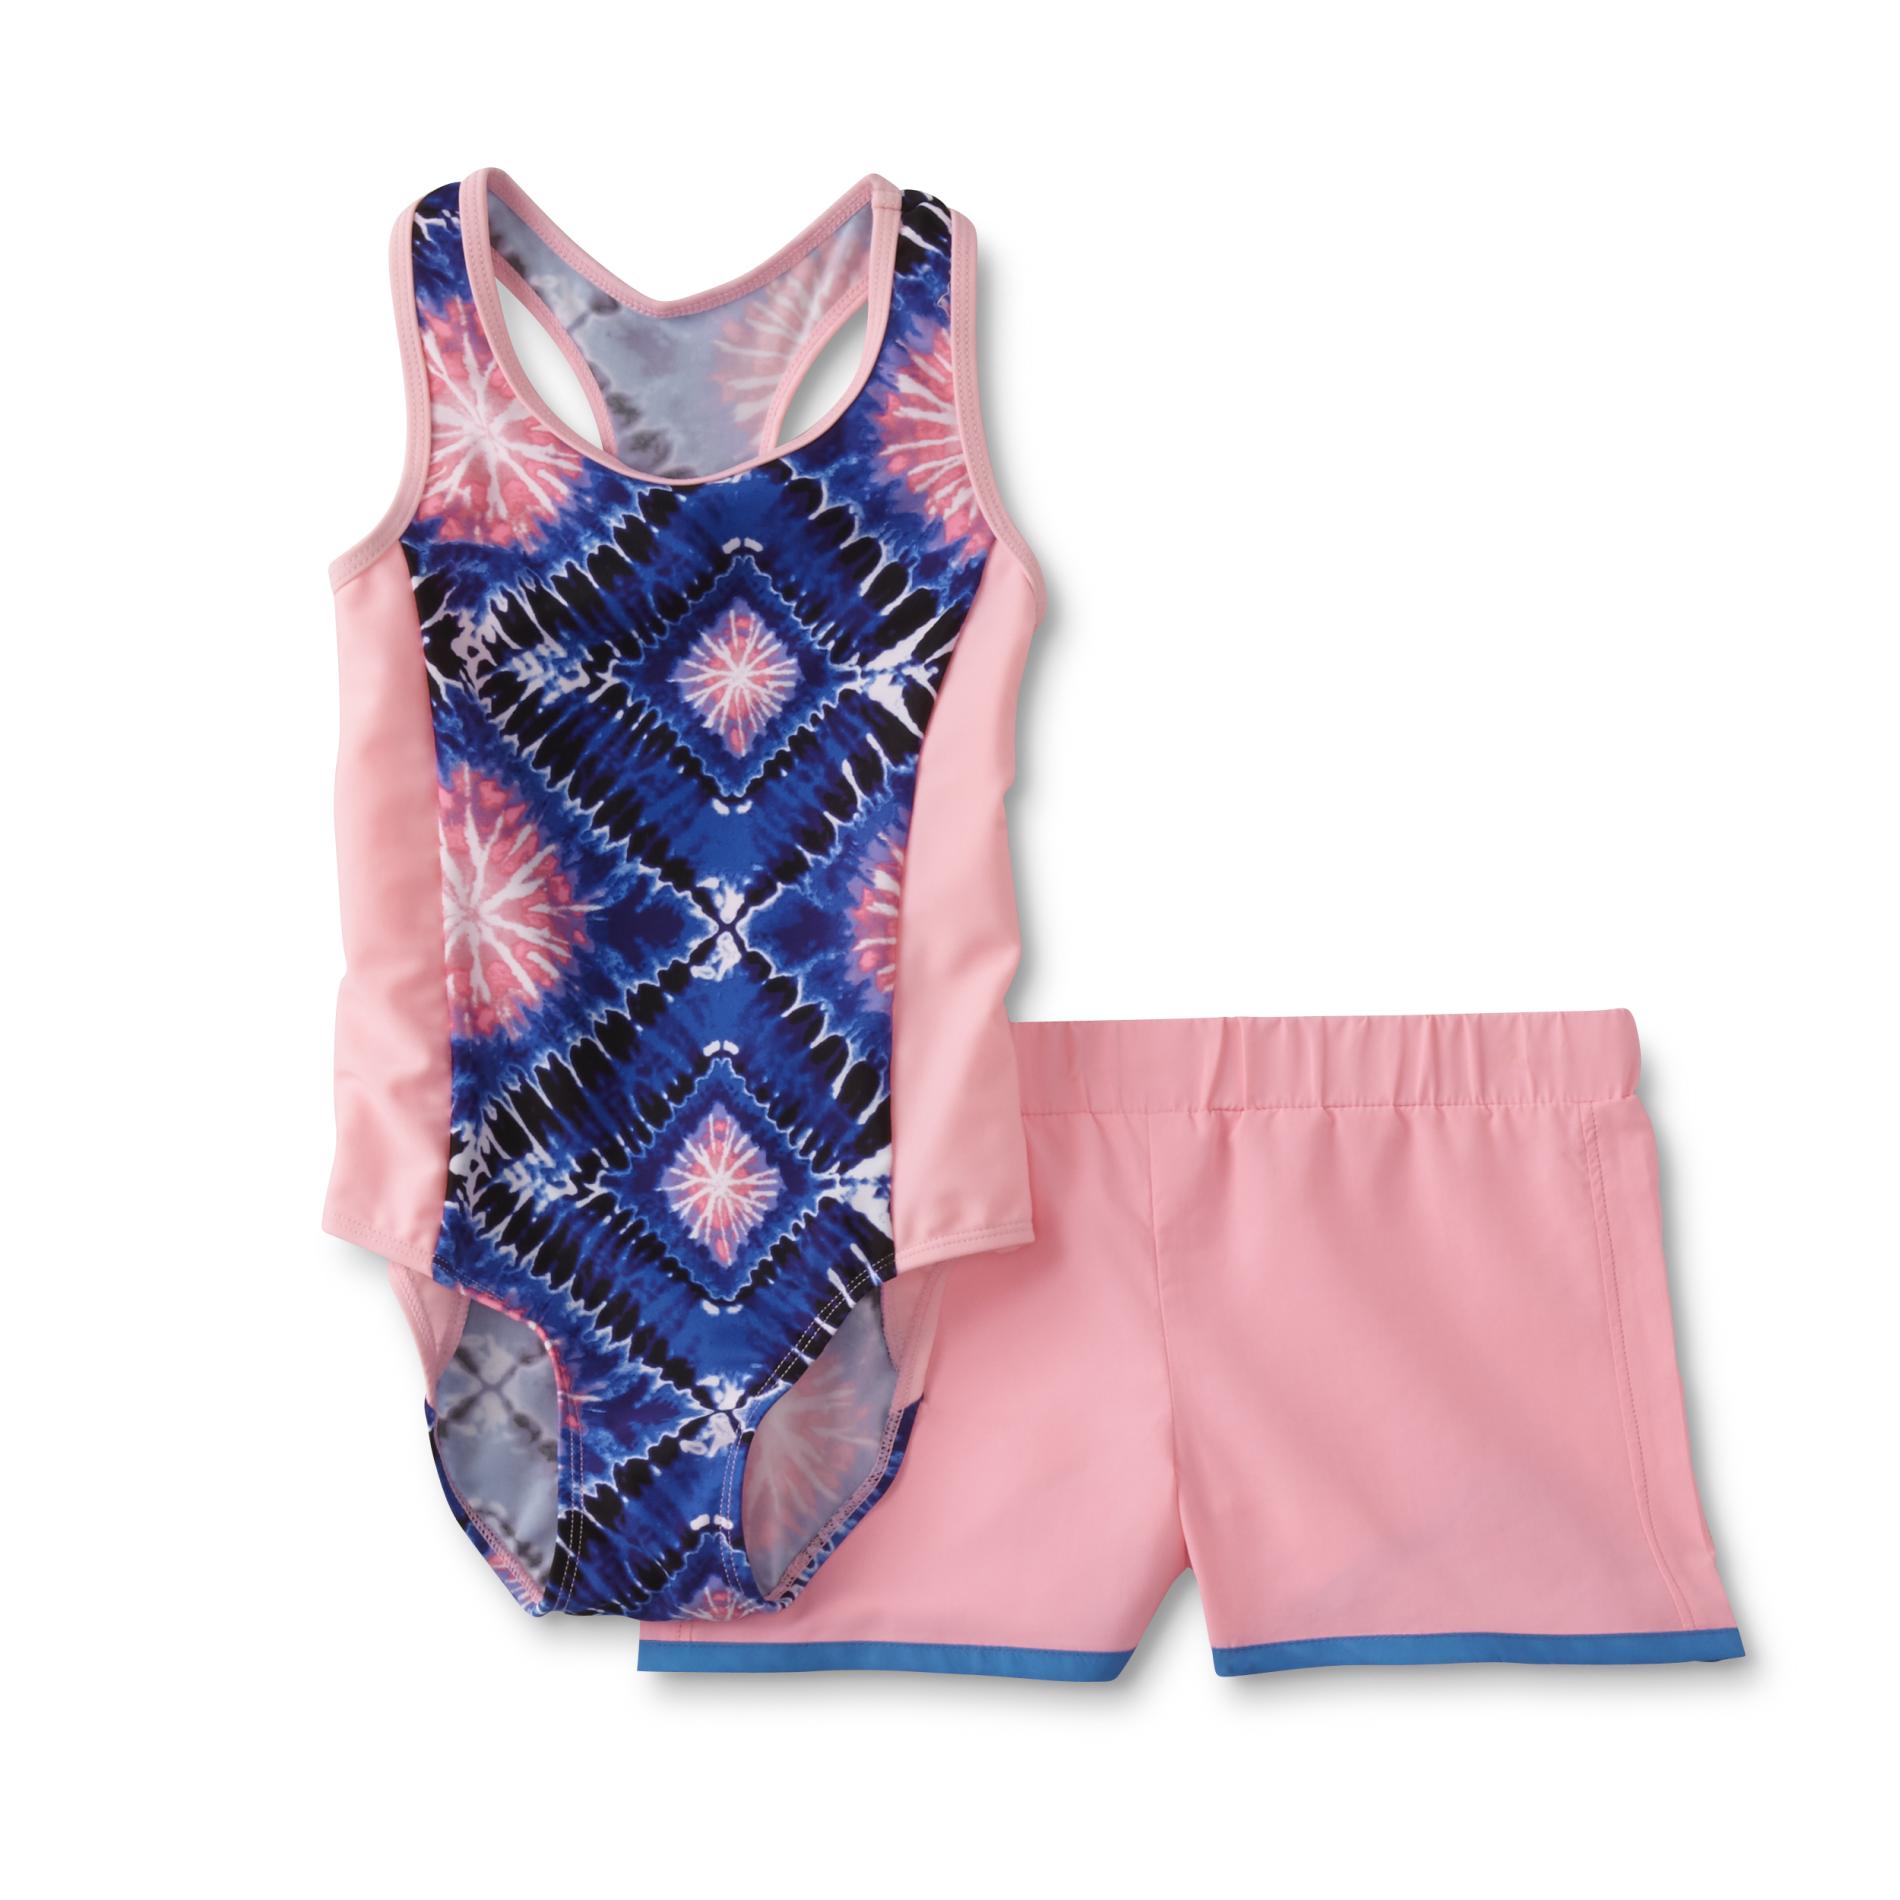 Joe Boxer Girls' One-Piece Swimsuit & Shorts - Tie-Dye